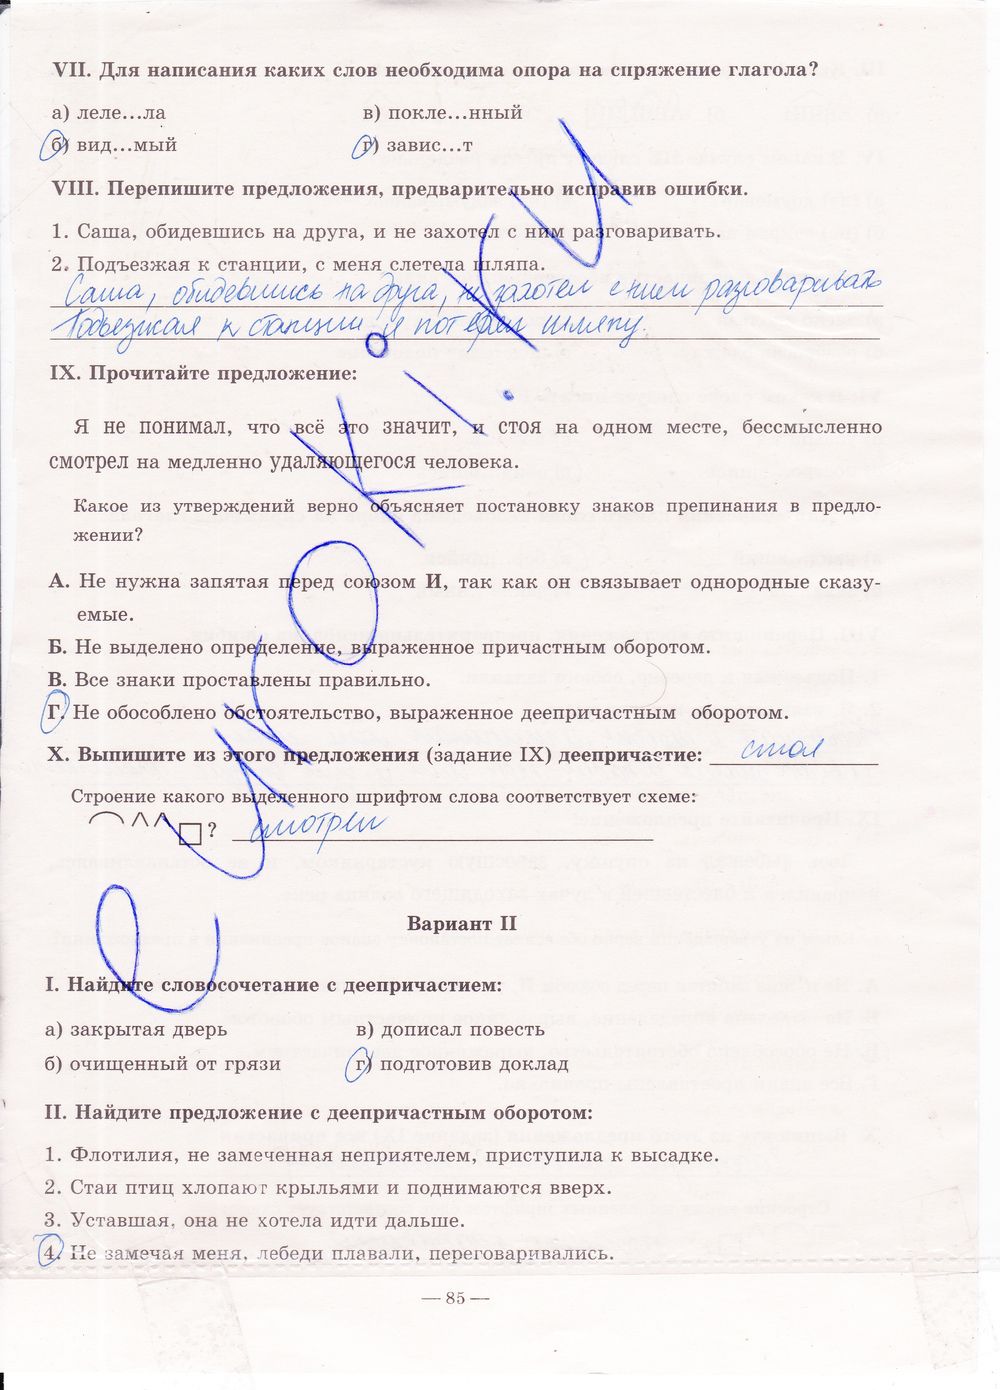 ГДЗ Русский язык 7 класс - стр. 85